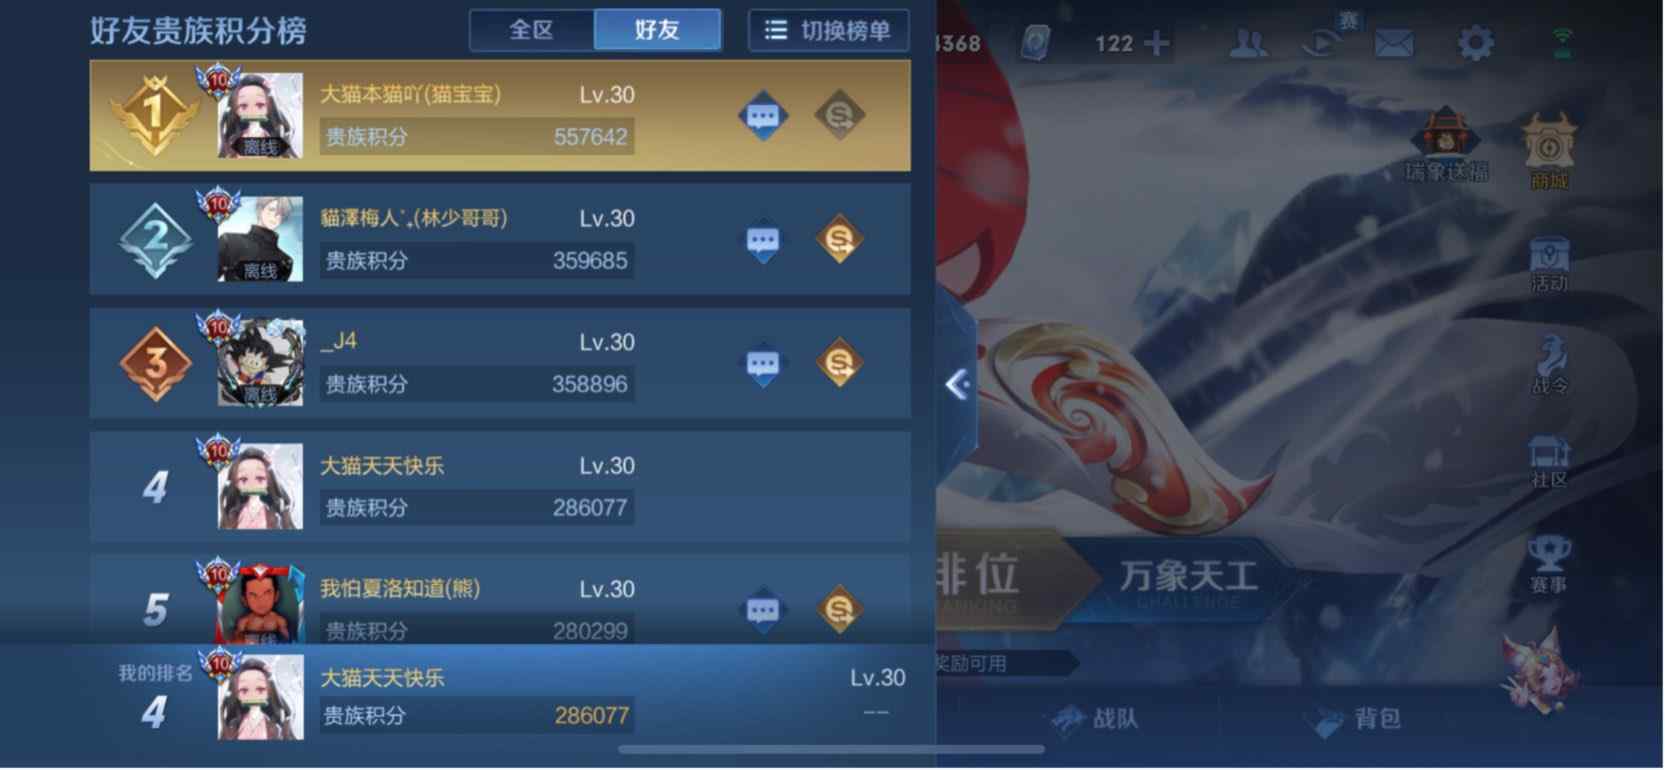 yx915游戏账号交易平台王者荣耀账号交易,高品质v10